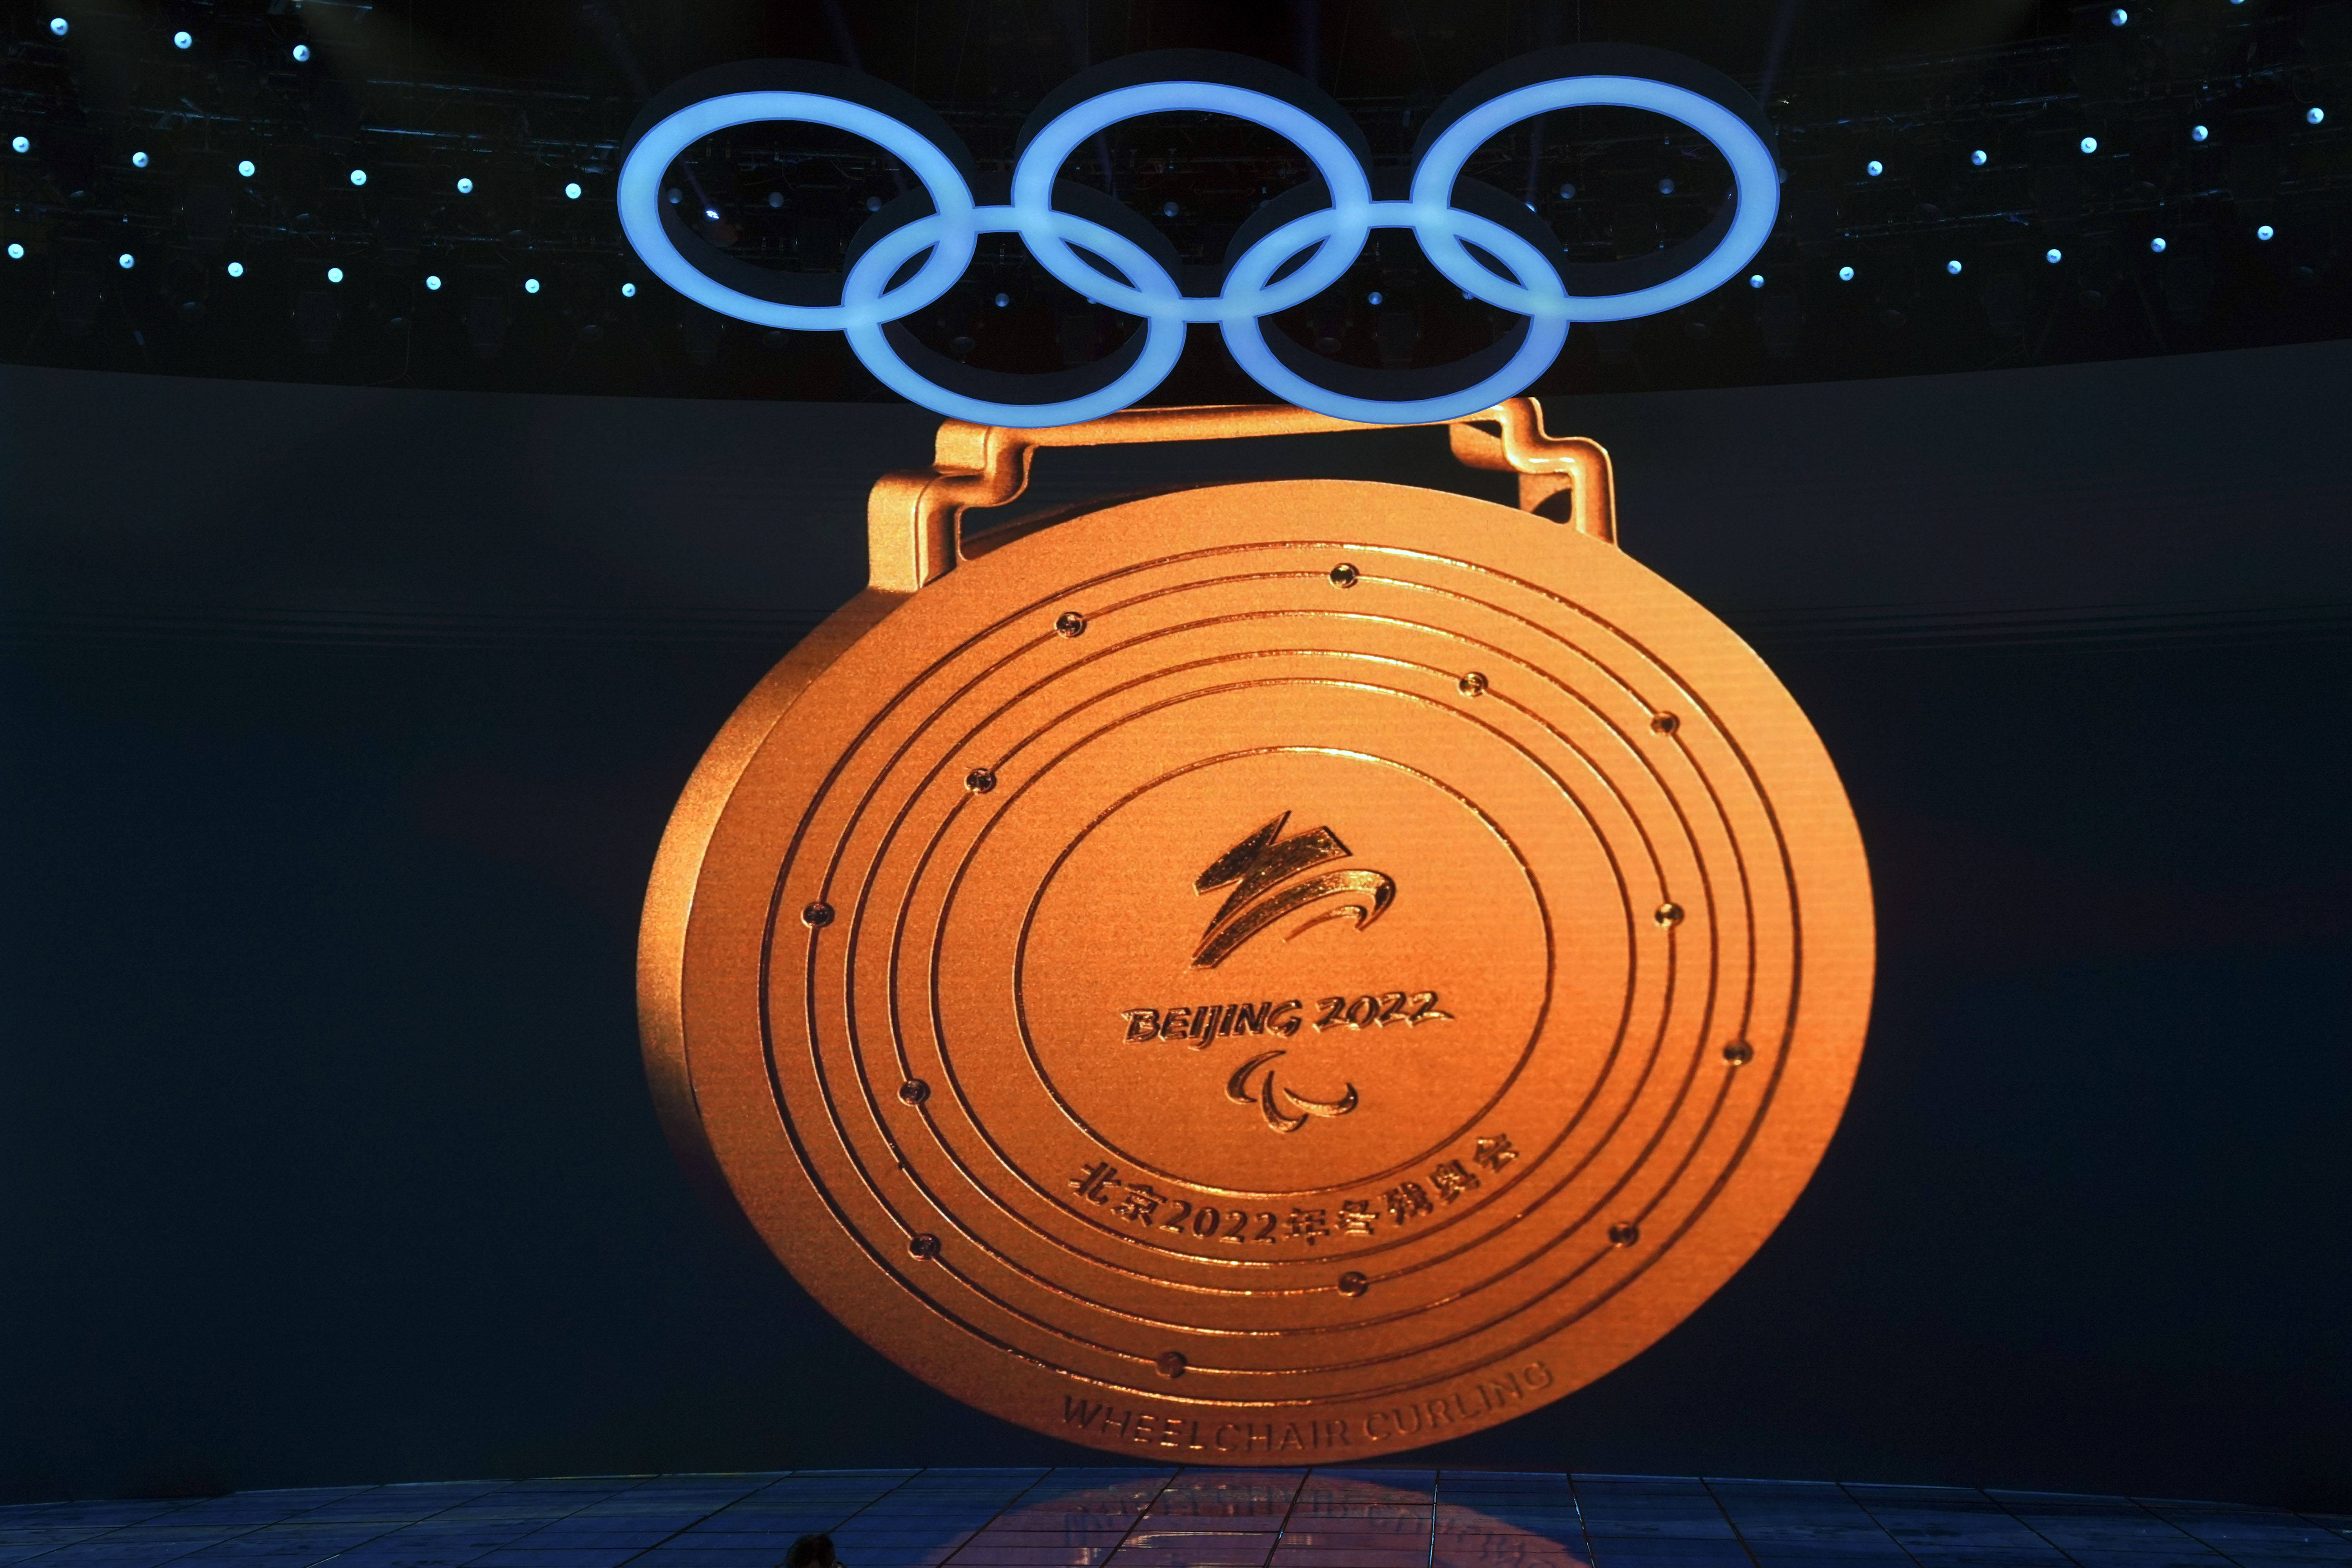 又见中国式浪漫2022年冬奥会和冬残奥会奖牌揭晓